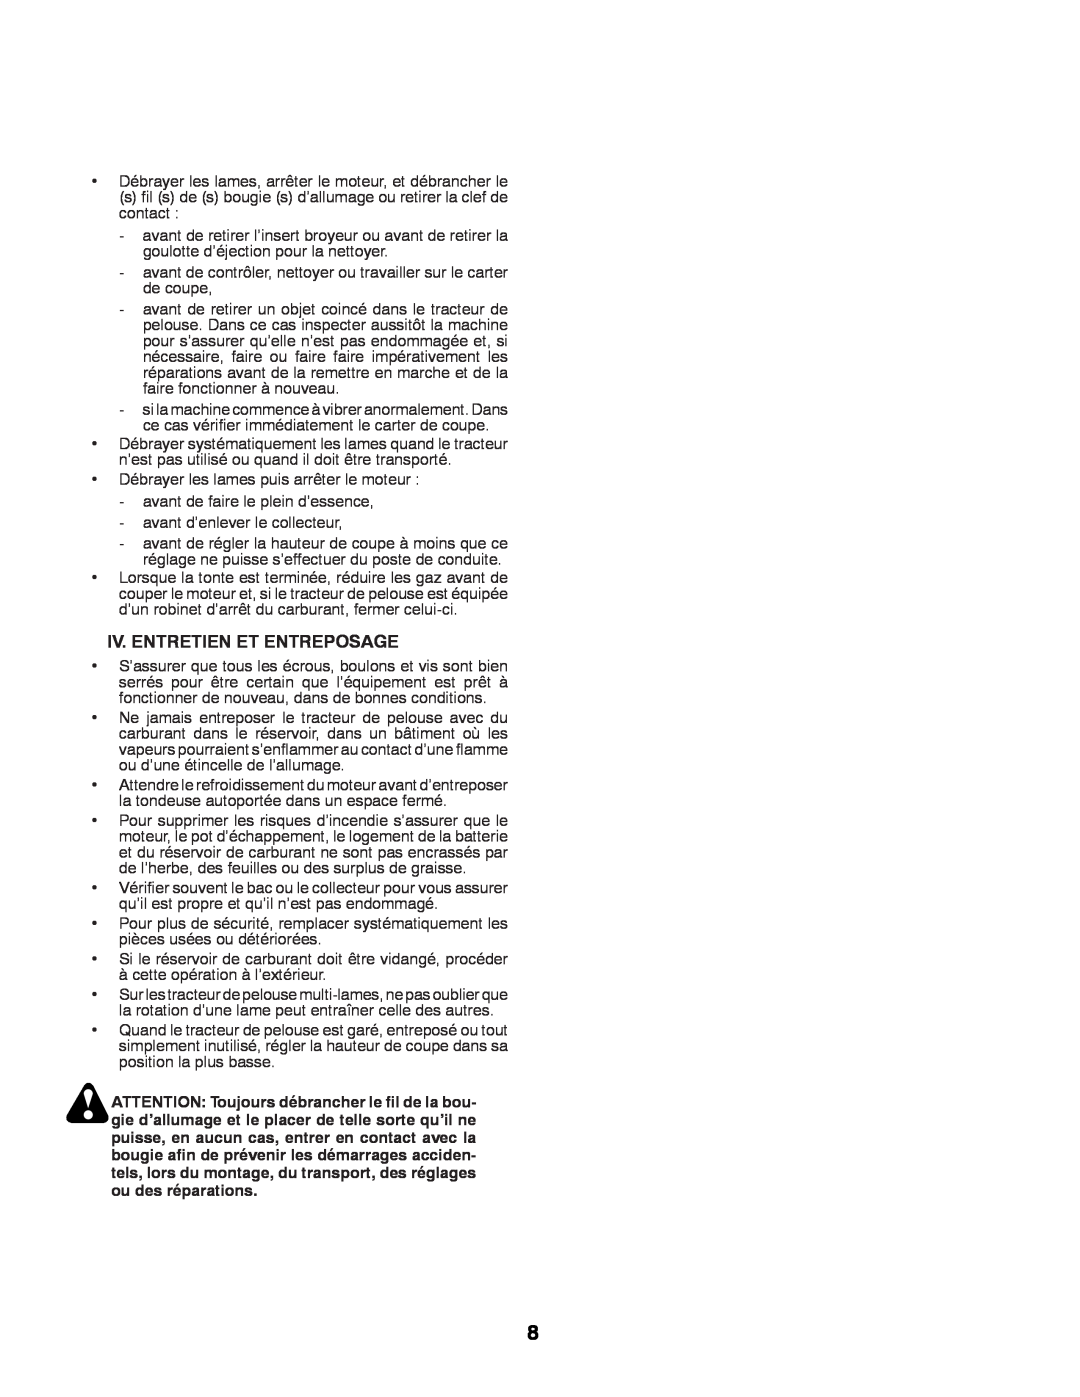 Husqvarna LTH152 instruction manual Iv. Entretien Et Entreposage 